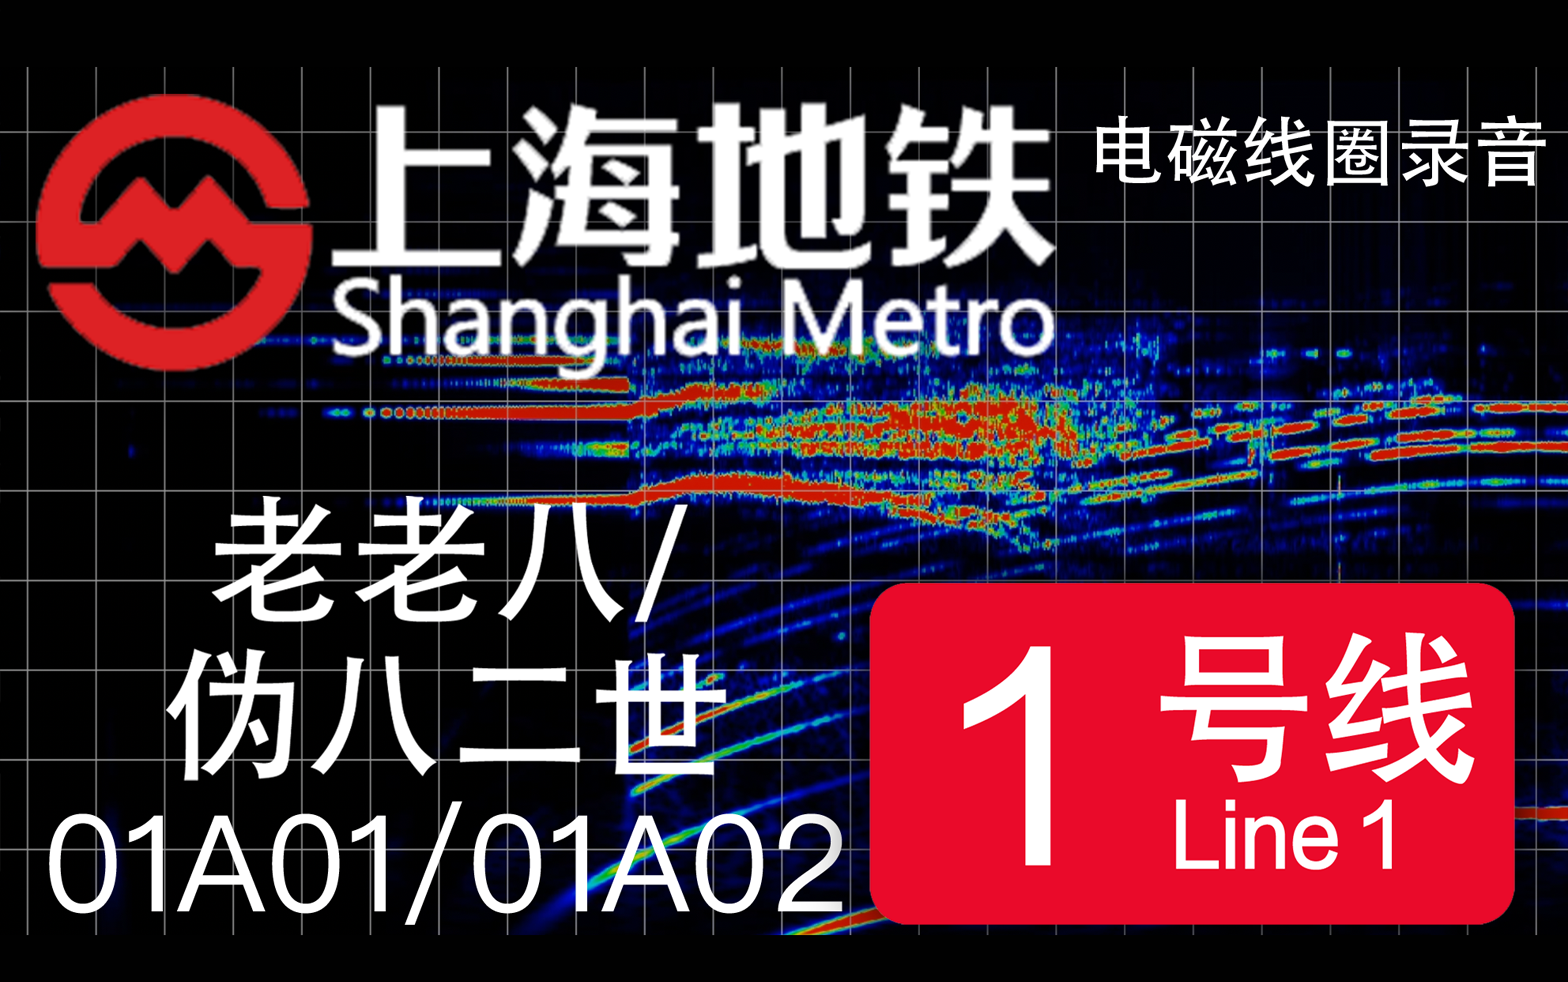 【上海地铁】上海地铁1号线-01A01/01A02-老老八/伪八二世 南车时代IGBT-VVVF电磁线圈录音